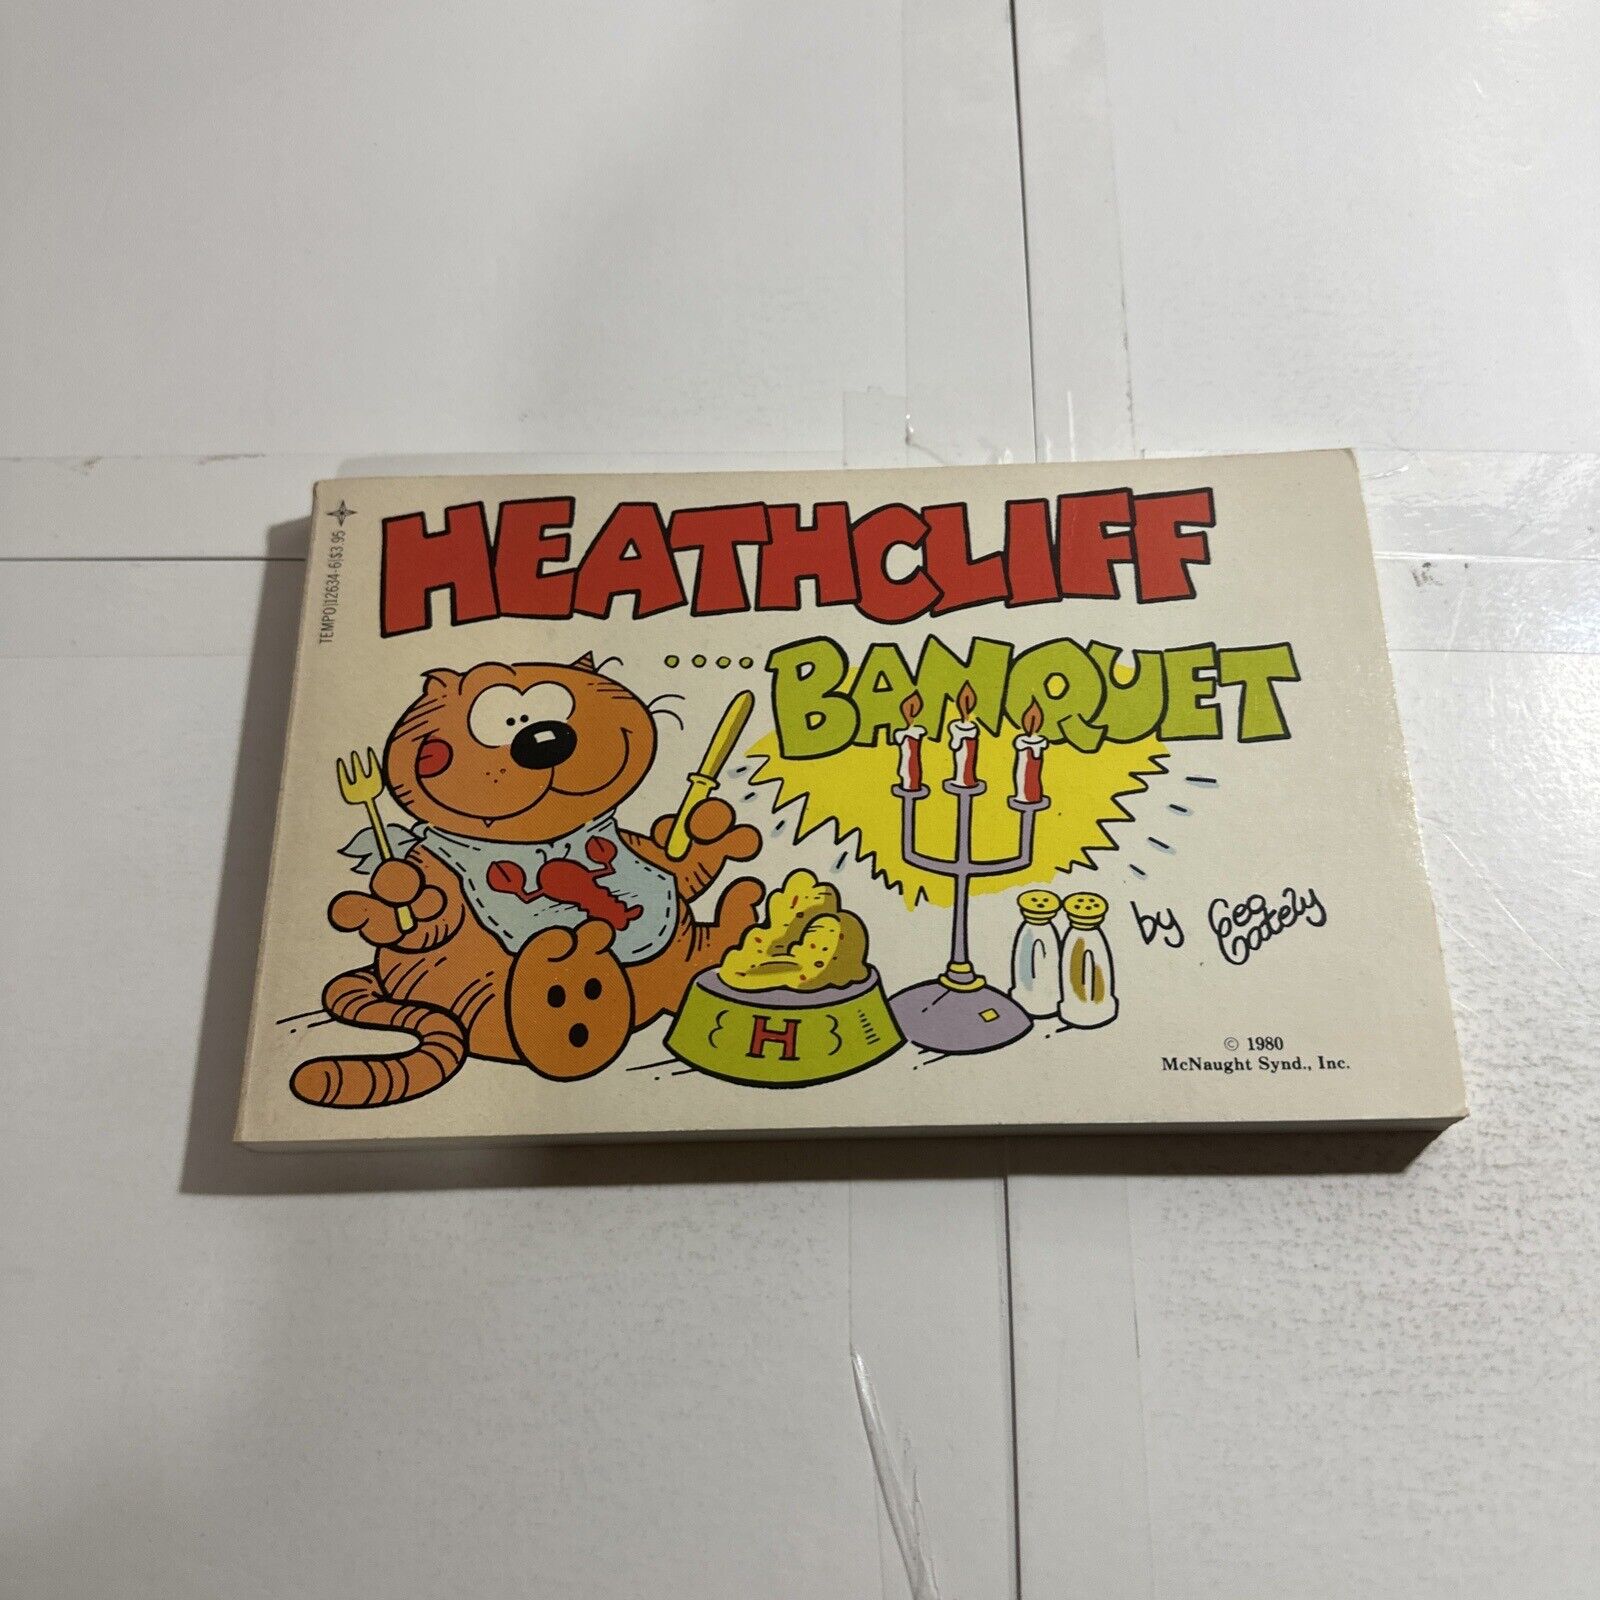 Heathcliff ... Banquet 1980 Geo Gately